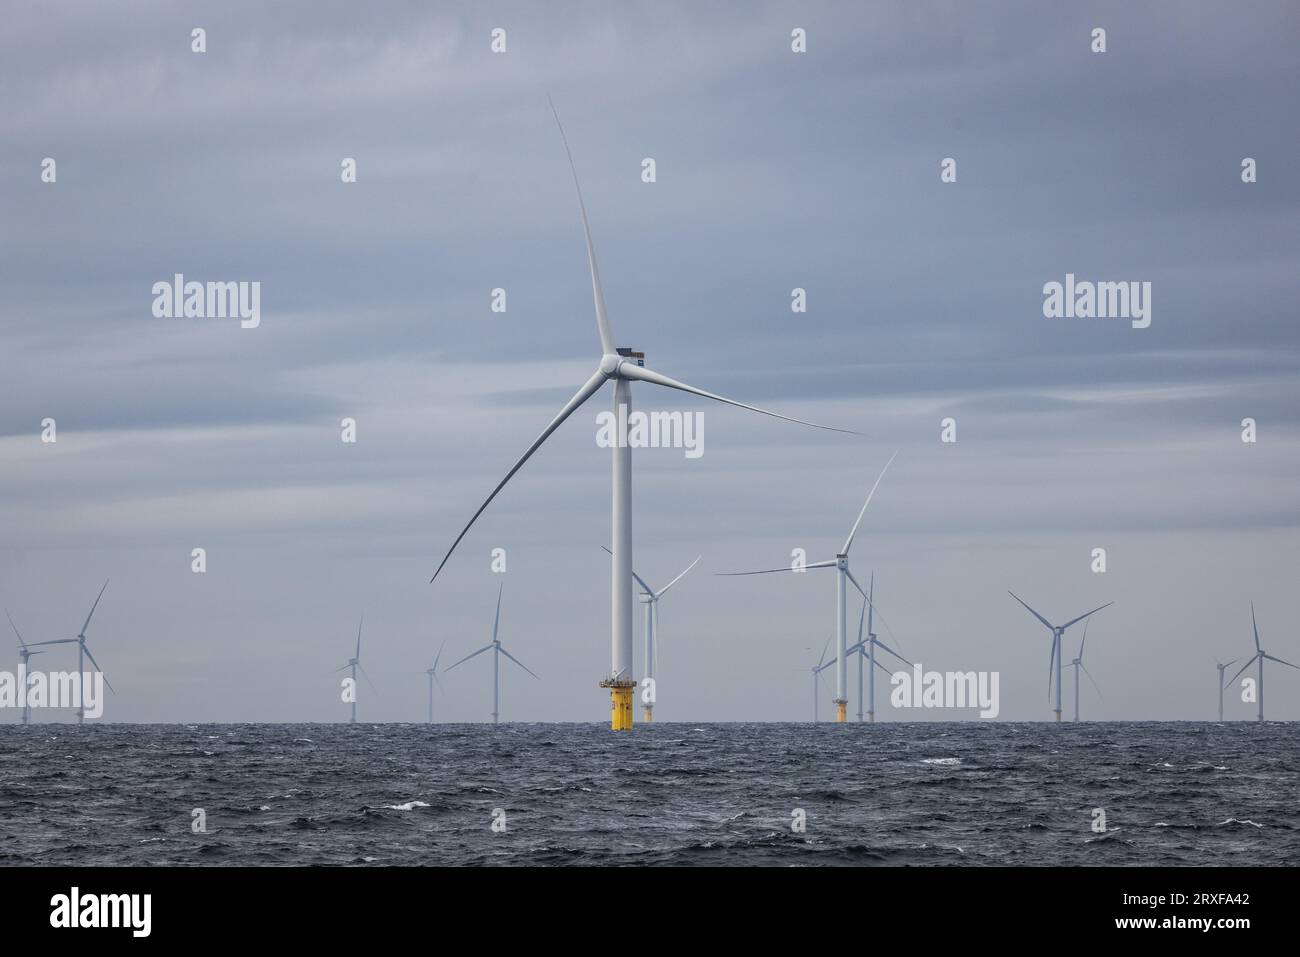 IJMUIDEN - les turbines en mer forment le parc éolien Hollandse Kust Zuid de Vattenfall. Le parc éolien se compose de 139 éoliennes et est situé à environ dix-huit kilomètres de la côte. Il alimente plus de 1,5 millions de foyers. ANP JEFFREY GROENEWEG pays-bas sorti - belgique sorti Banque D'Images